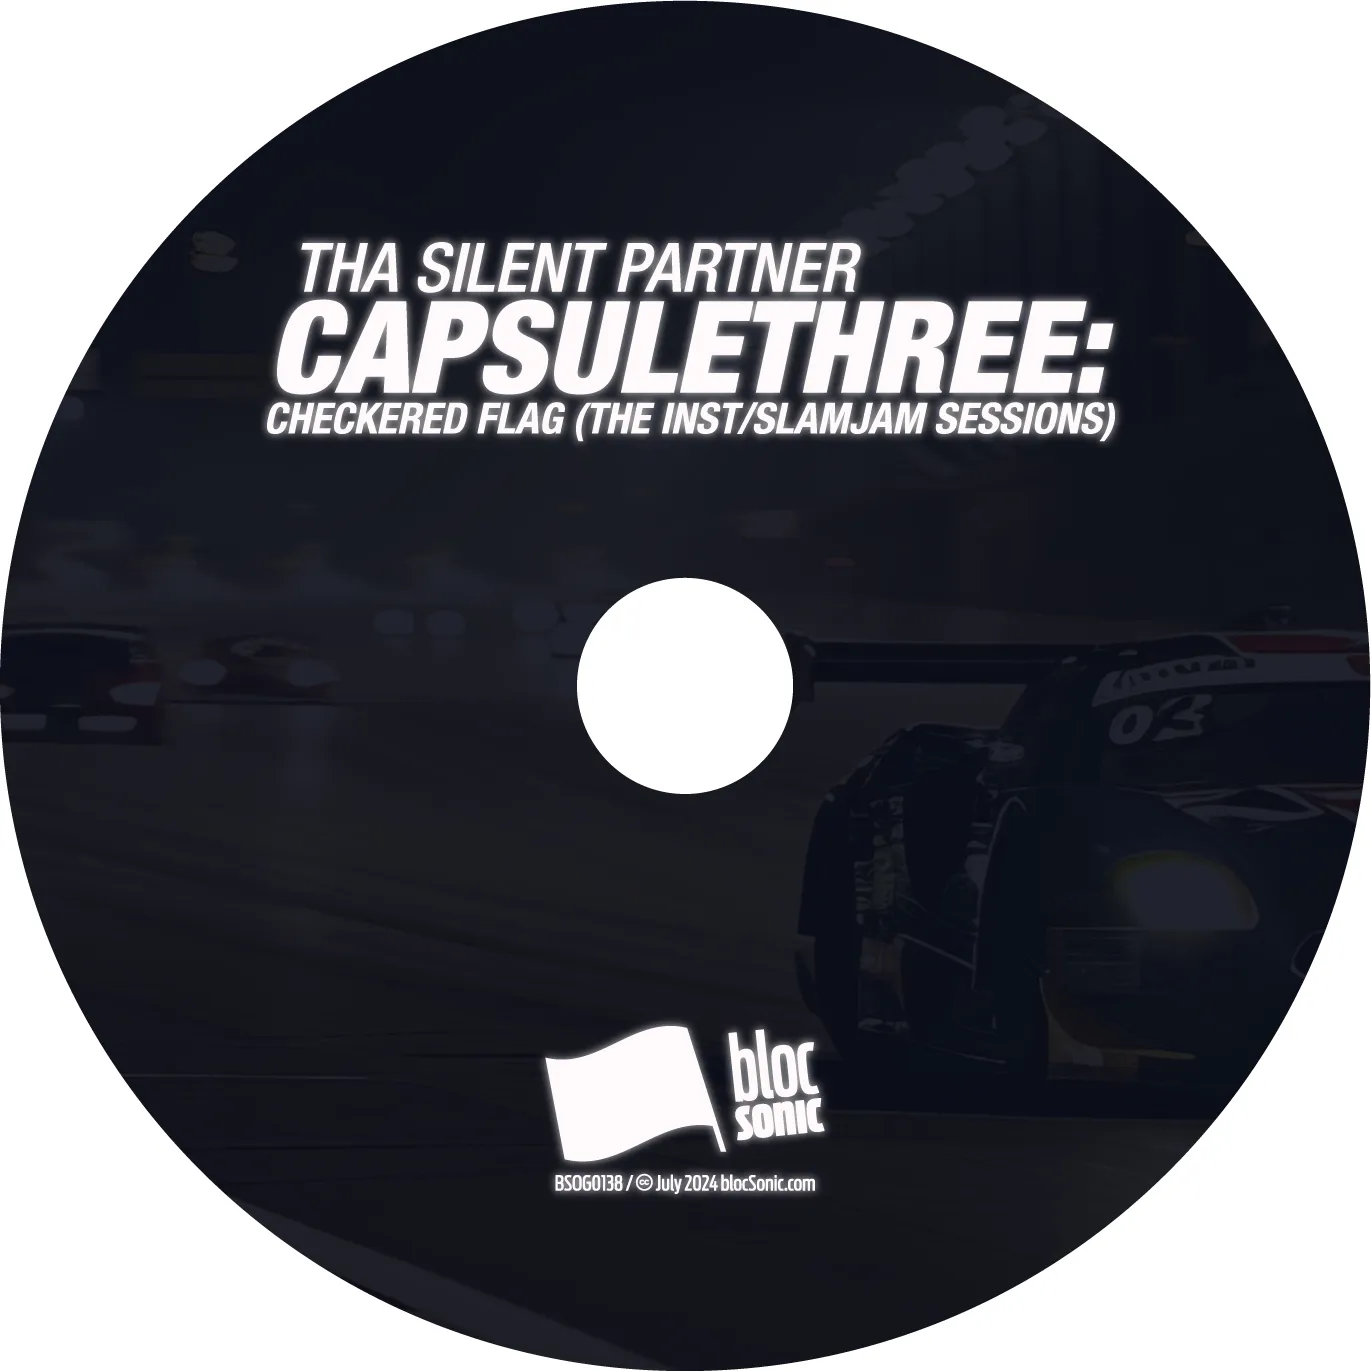 Album disc art for “CAPSULETHREE: Checkered Flag (The Inst/SlamJam Sessions)” by Tha Silent Partner